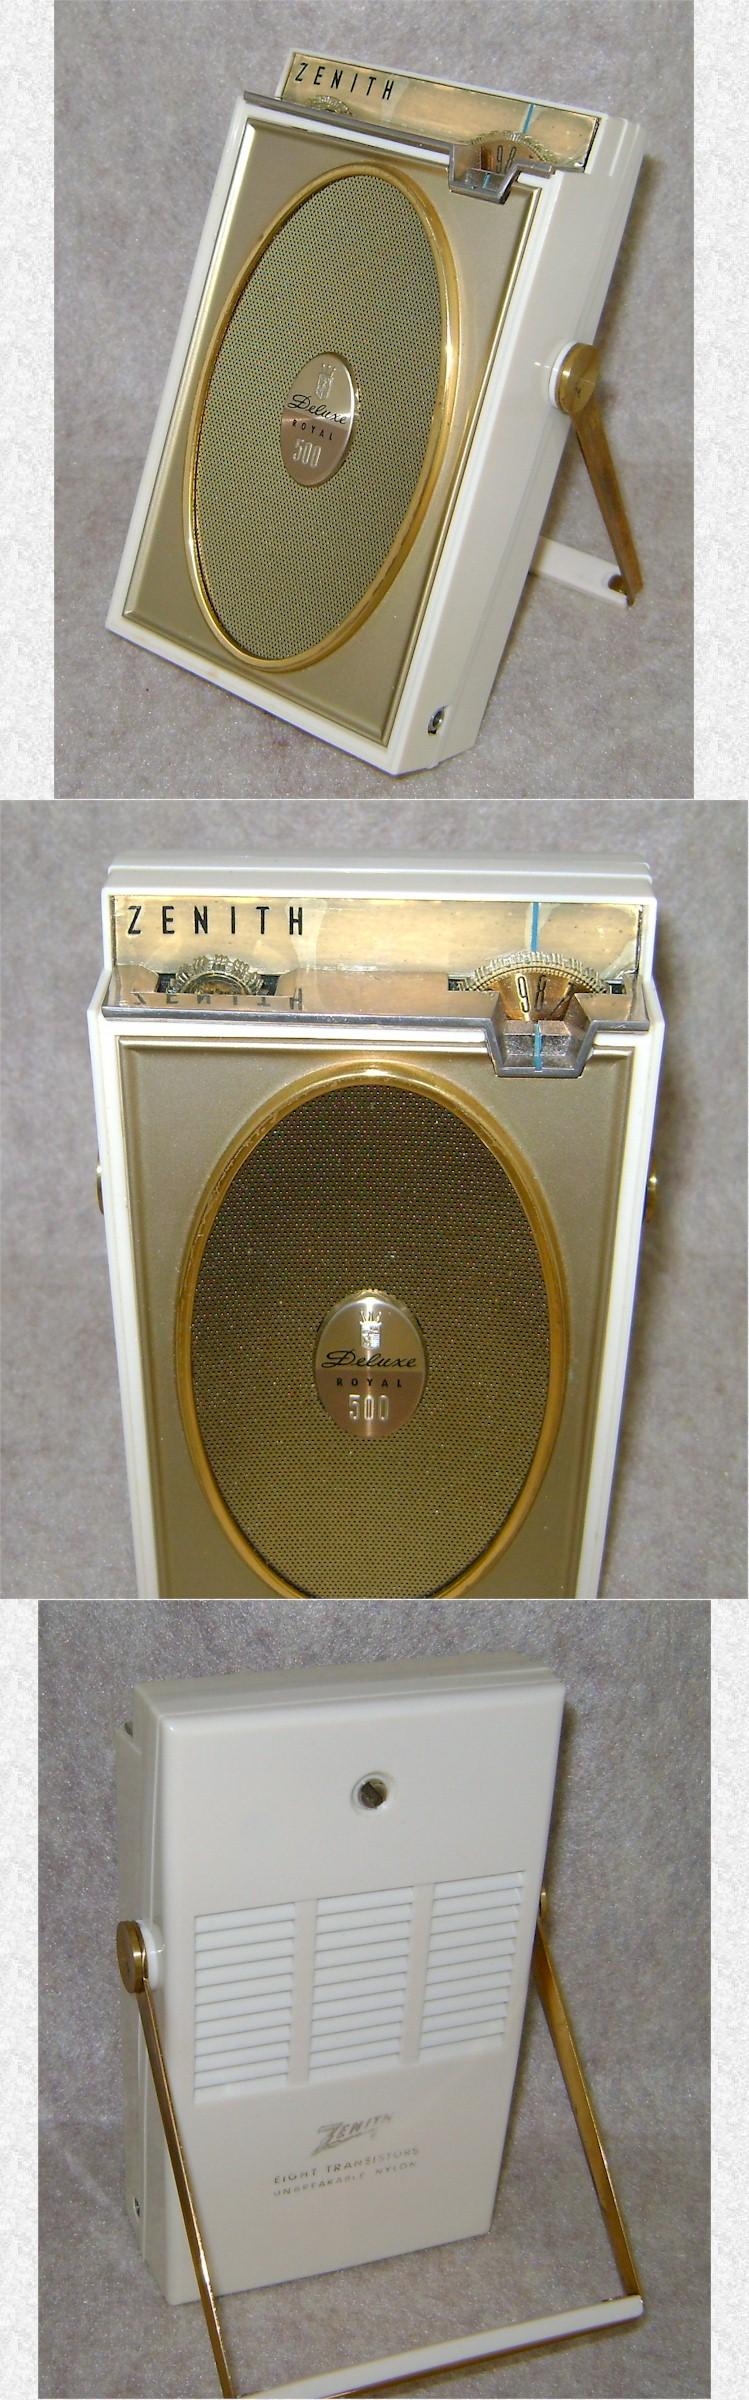 Zenith Royal 500H (1961)